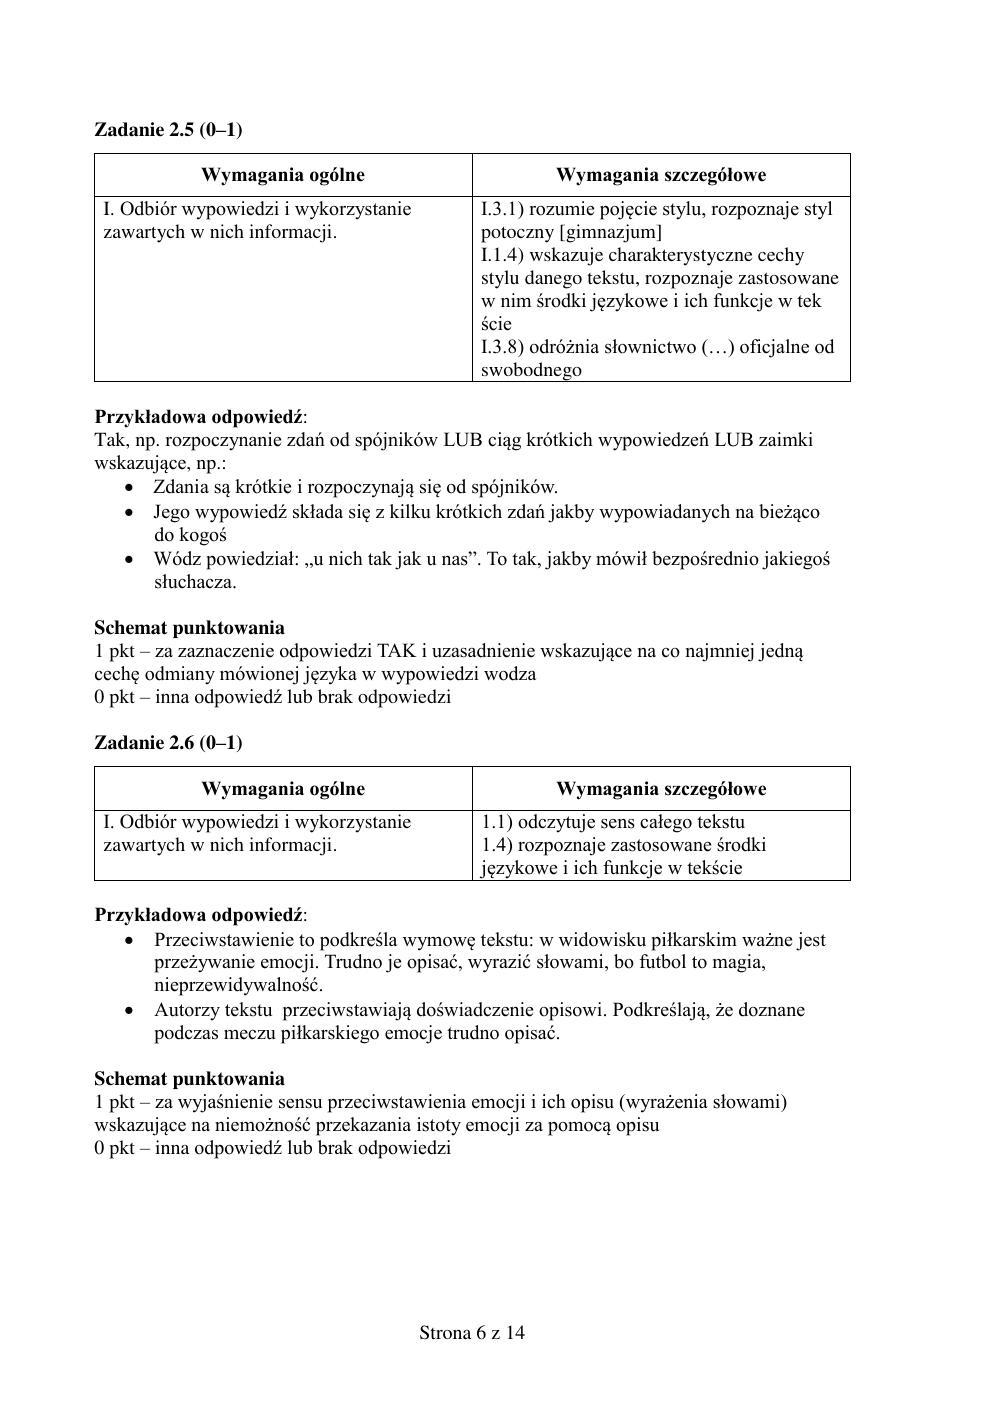 zasady oceniania - odpowiedzi - polski podstawowy - matura 2015 przykładowa-06